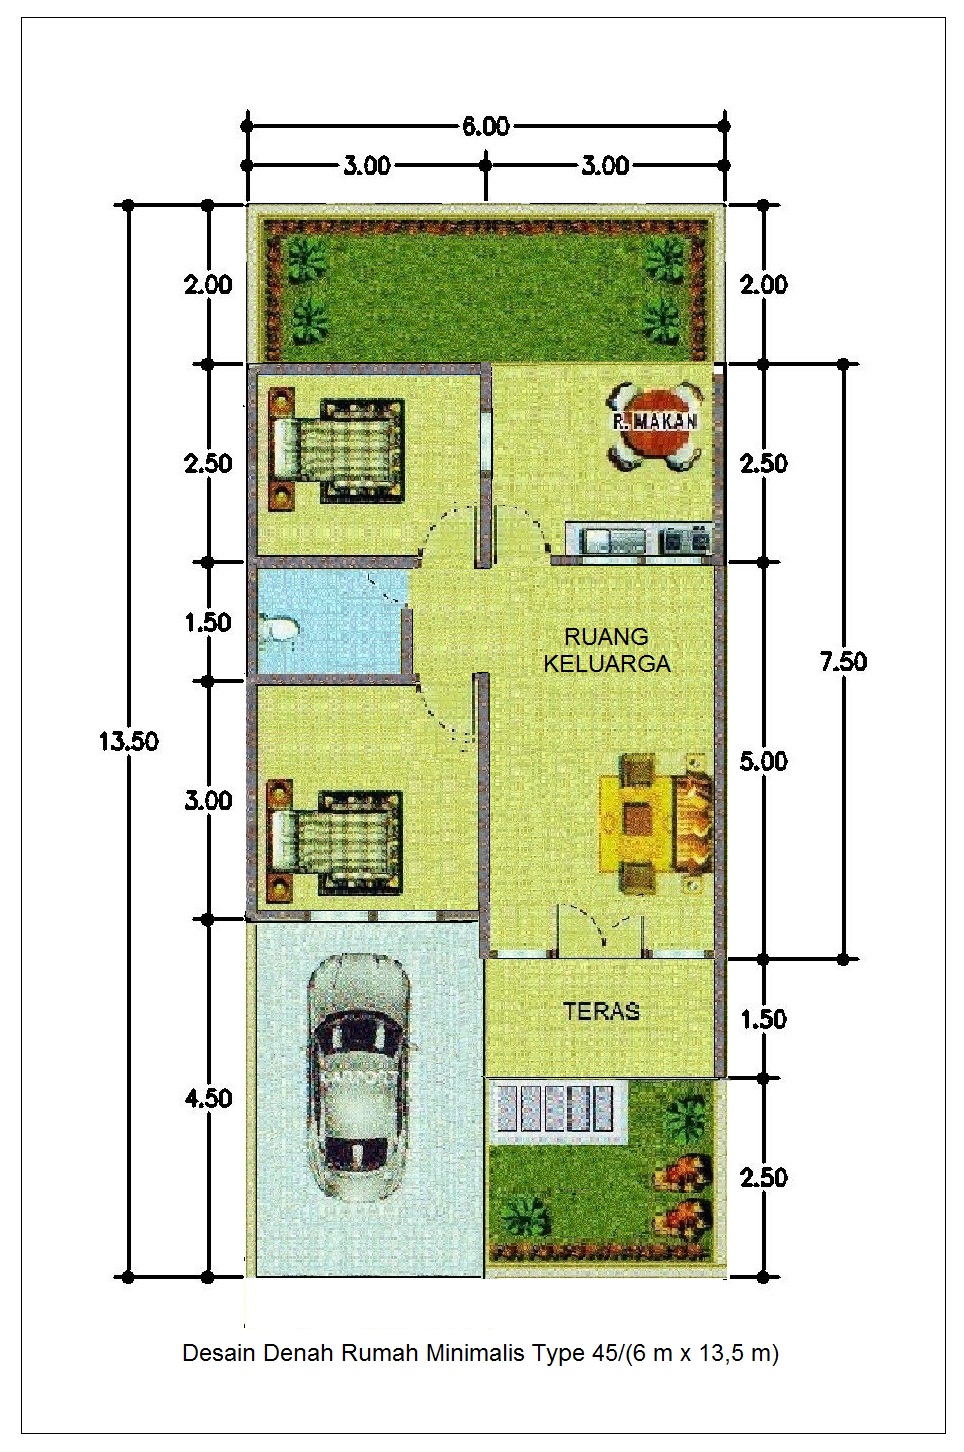 Desain Denah  Rumah  Minimalis Type 45 6m x  13 5m Info 